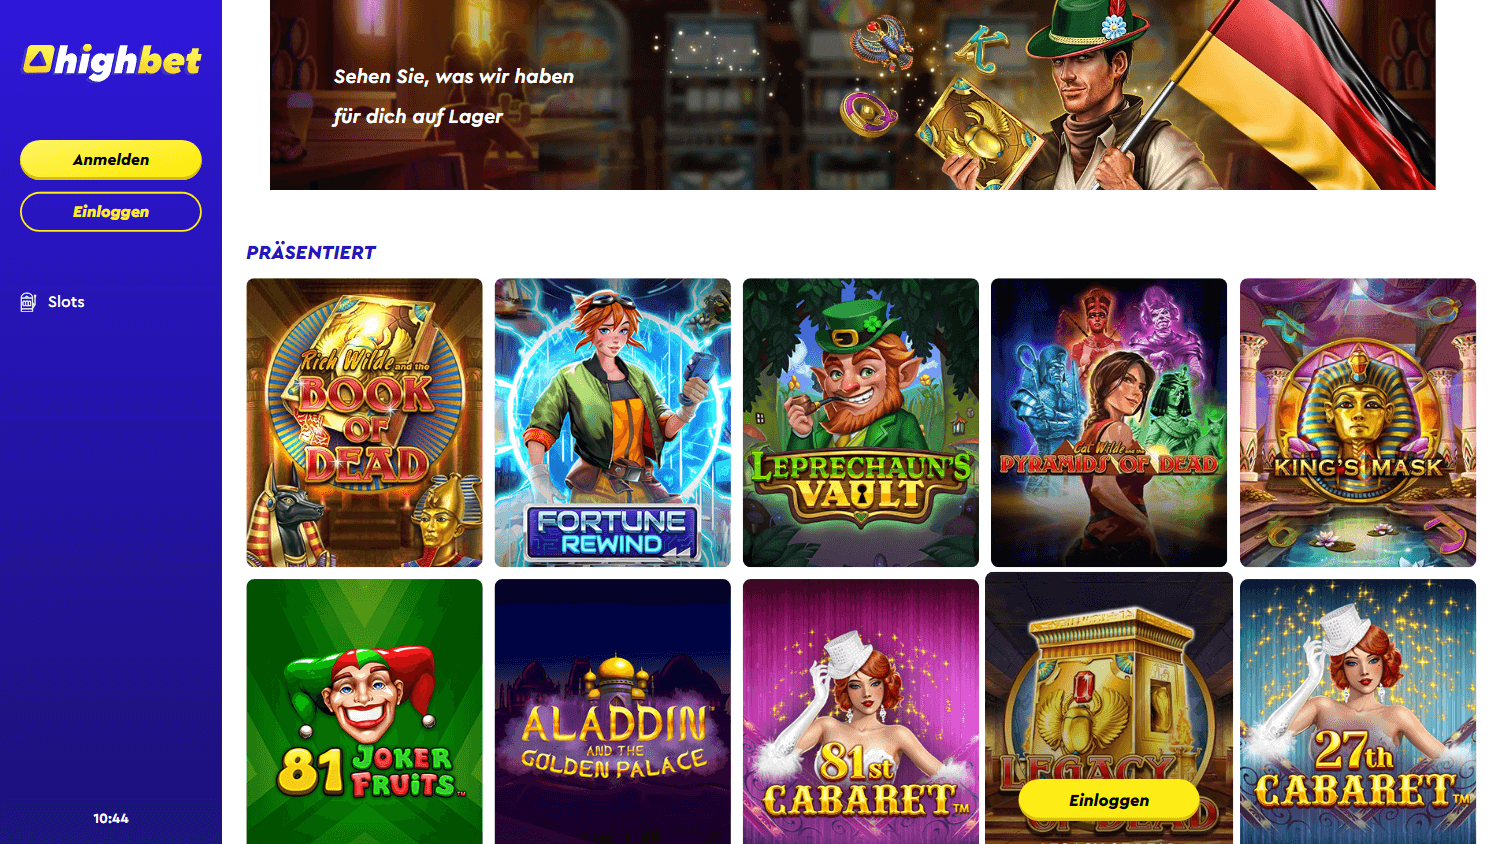 highbet_casino_de_homepage_desktop